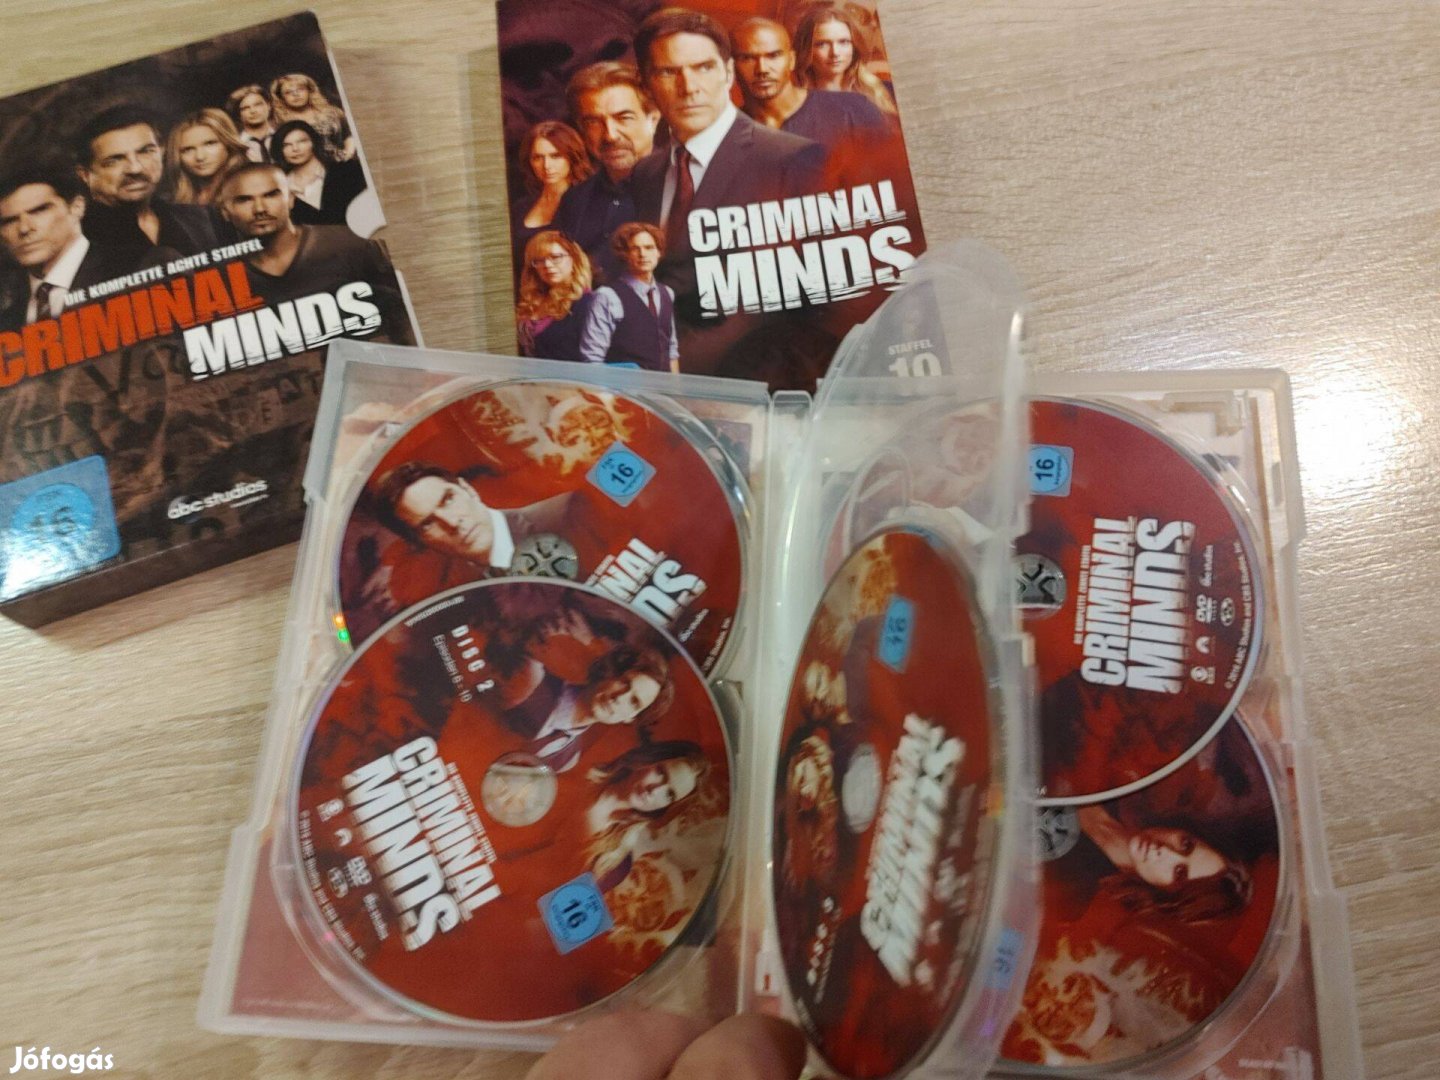 Gyilkos elmék Criminal minds dvd (5 lemezes) csak angol, német, franc